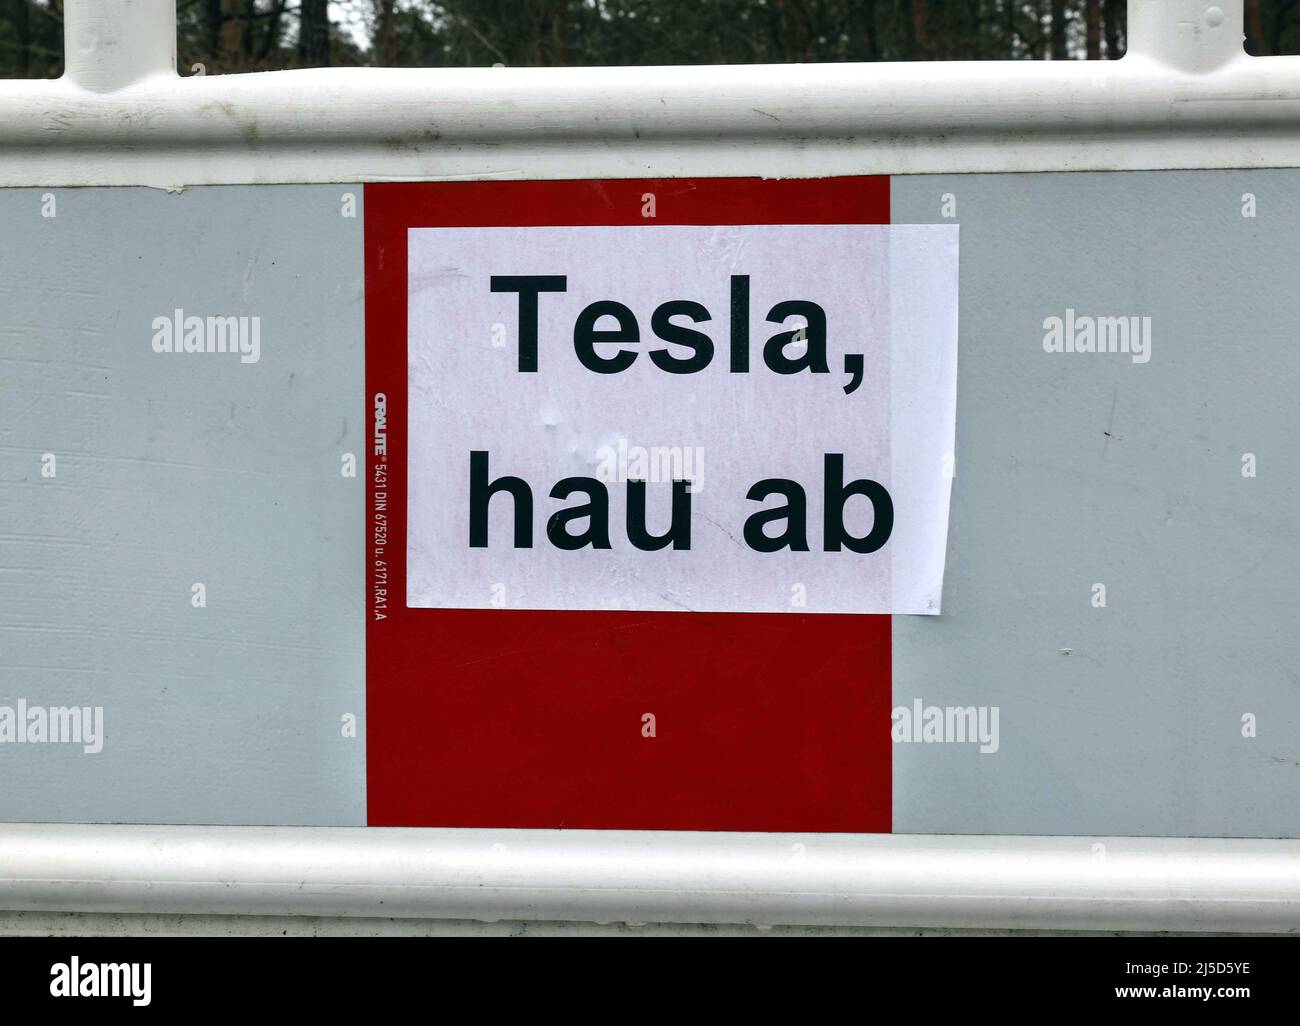 Gruenheide, 26.02.2022 - Protestschild gegen den Bau des Tesla Gigafactory in Gruenheide. Viele Bürger in und um Gruenheide sind gegen den Bau der Tesla-Fabrik. [Automatisierte Übersetzung] Stockfoto